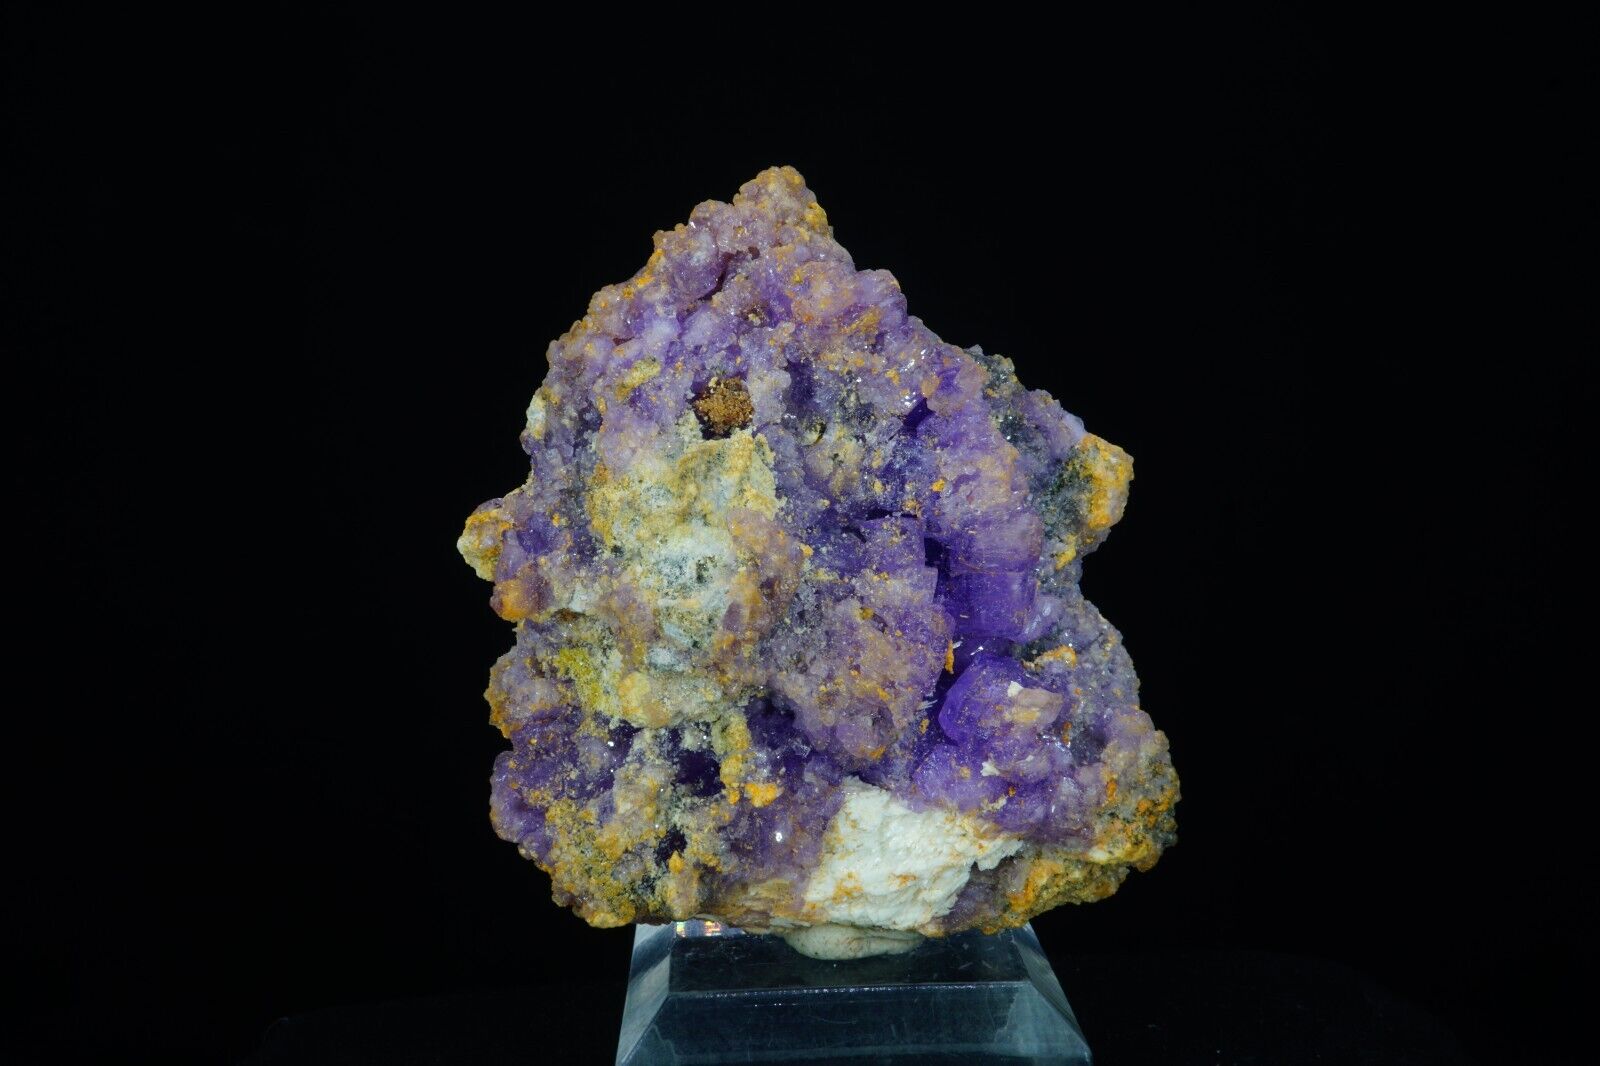 Coquimbite, Halotrichite & Copiapite / Rare Mineral Specimen / Javier Mine, Peru